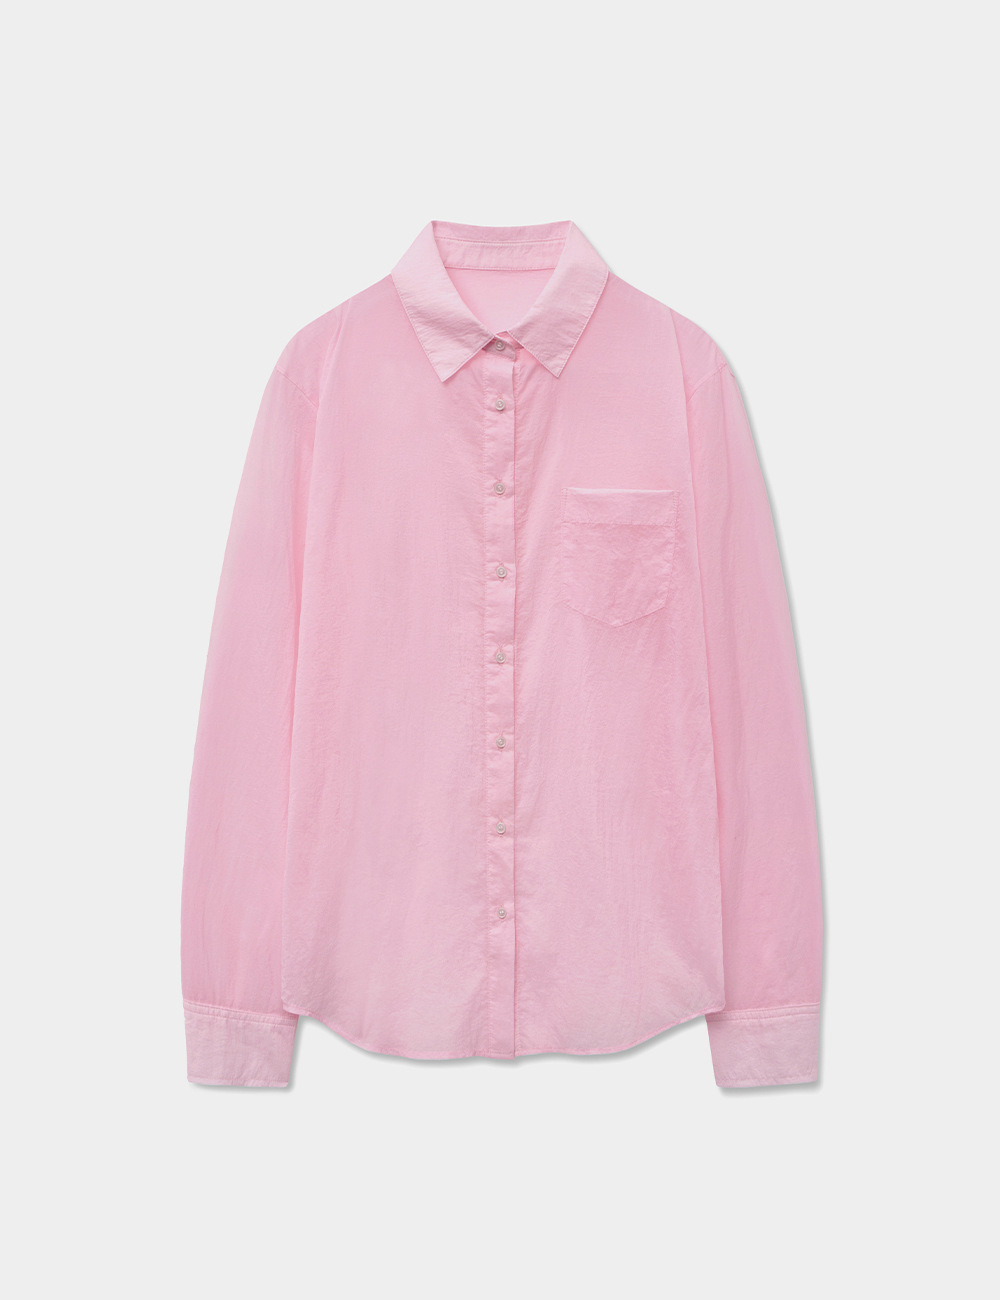 글로우 시스루 셔츠 핑크 MDSH014PINK